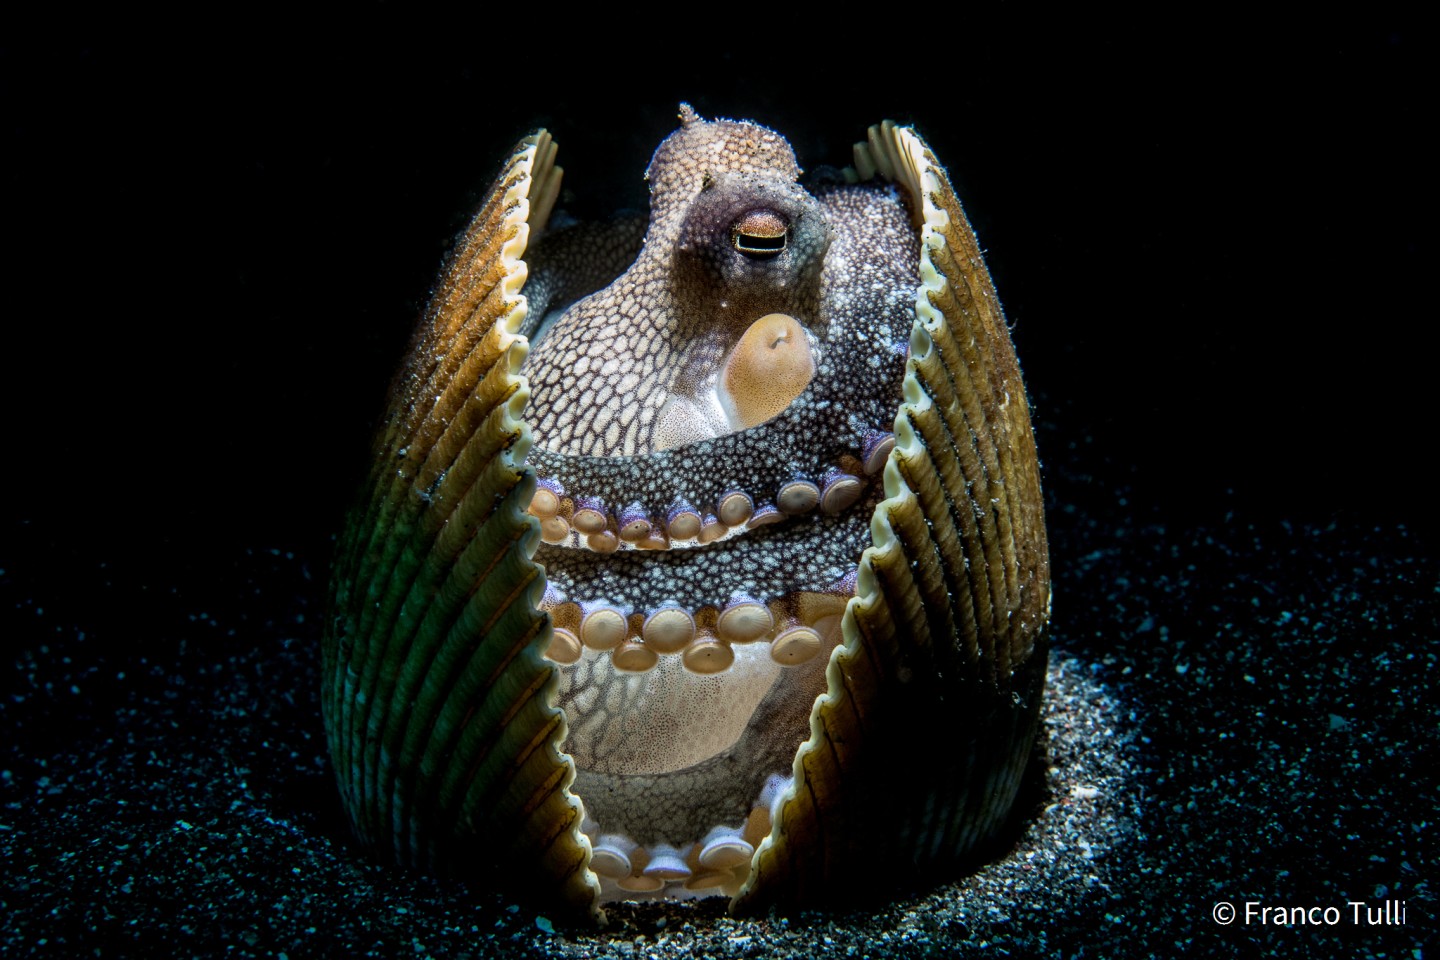 Второе место - Поведение животных. "Сновидение". Кокосовый осьминог (Amphioctopus marginatus). Пролив Лембех, Индонезия. Фото: Franco Tulli